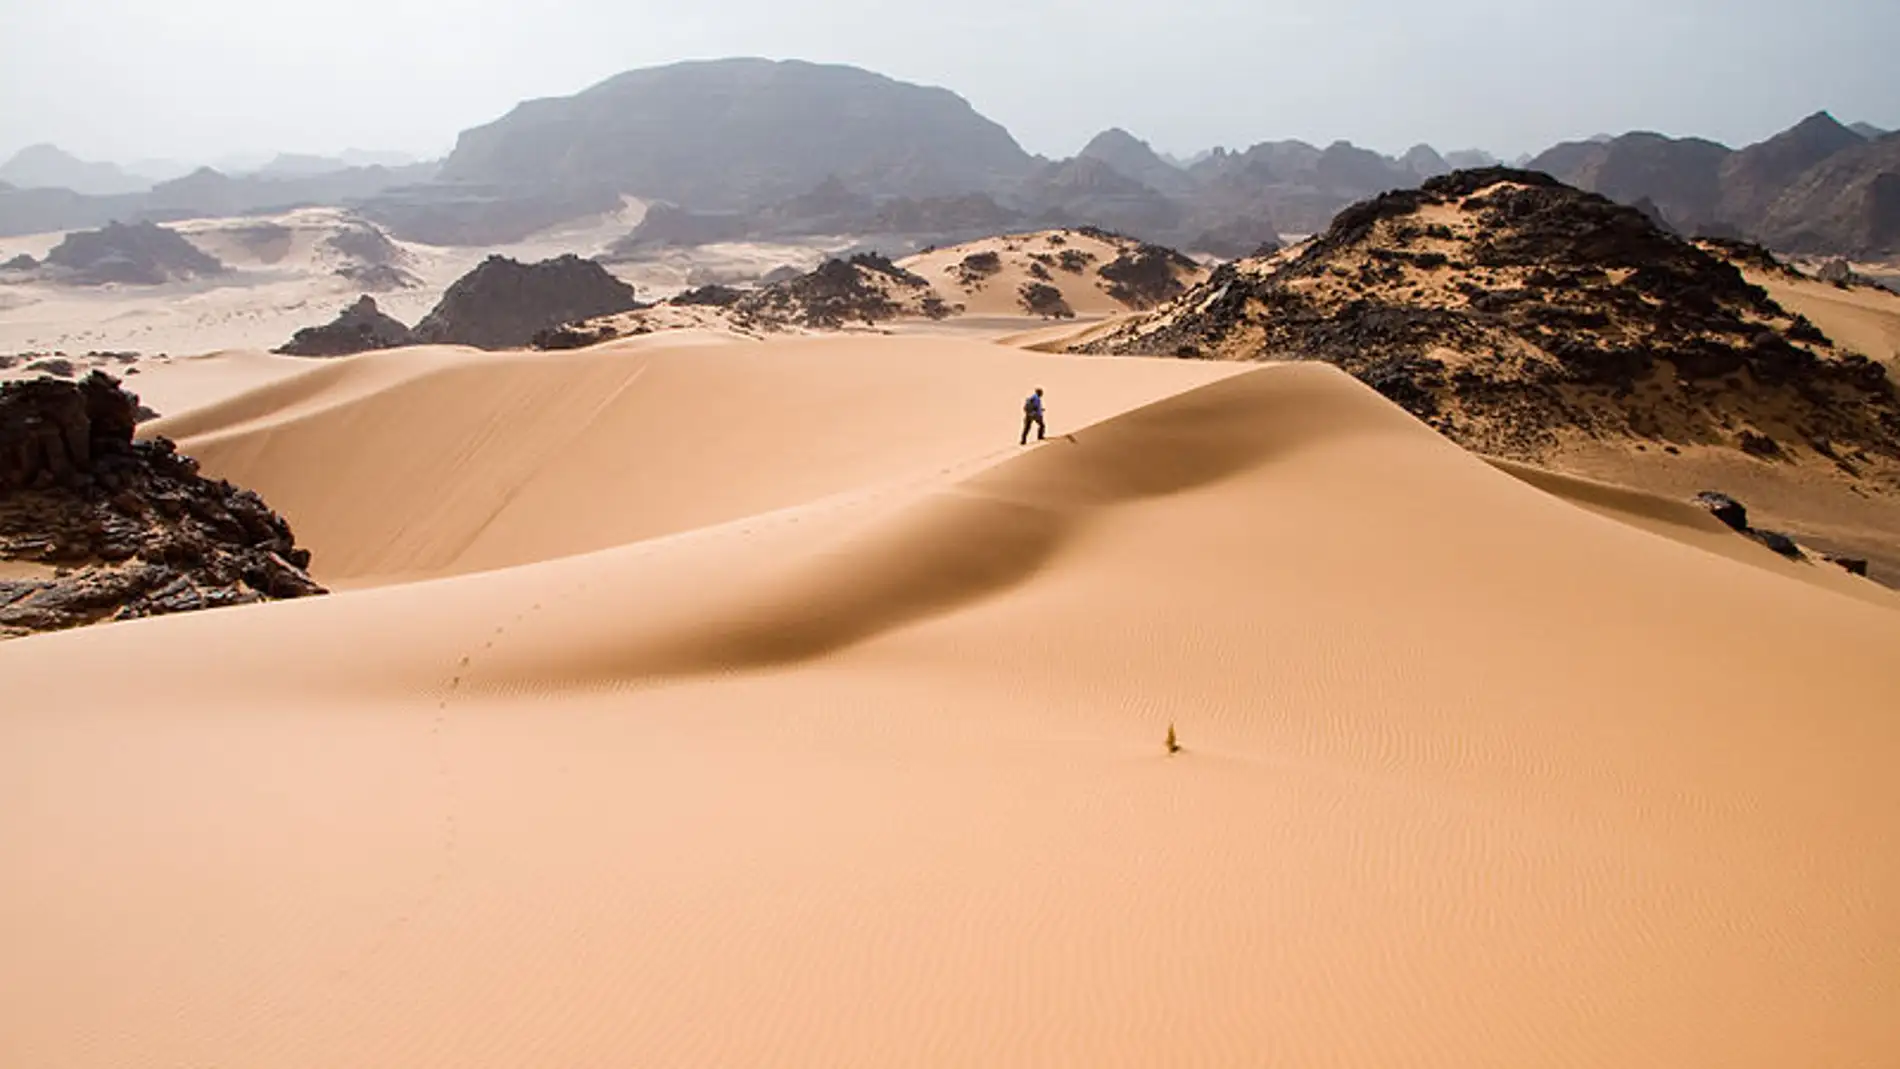 El Sáhara podría cambiar mucho su aspecto con placas solares y vegetación 